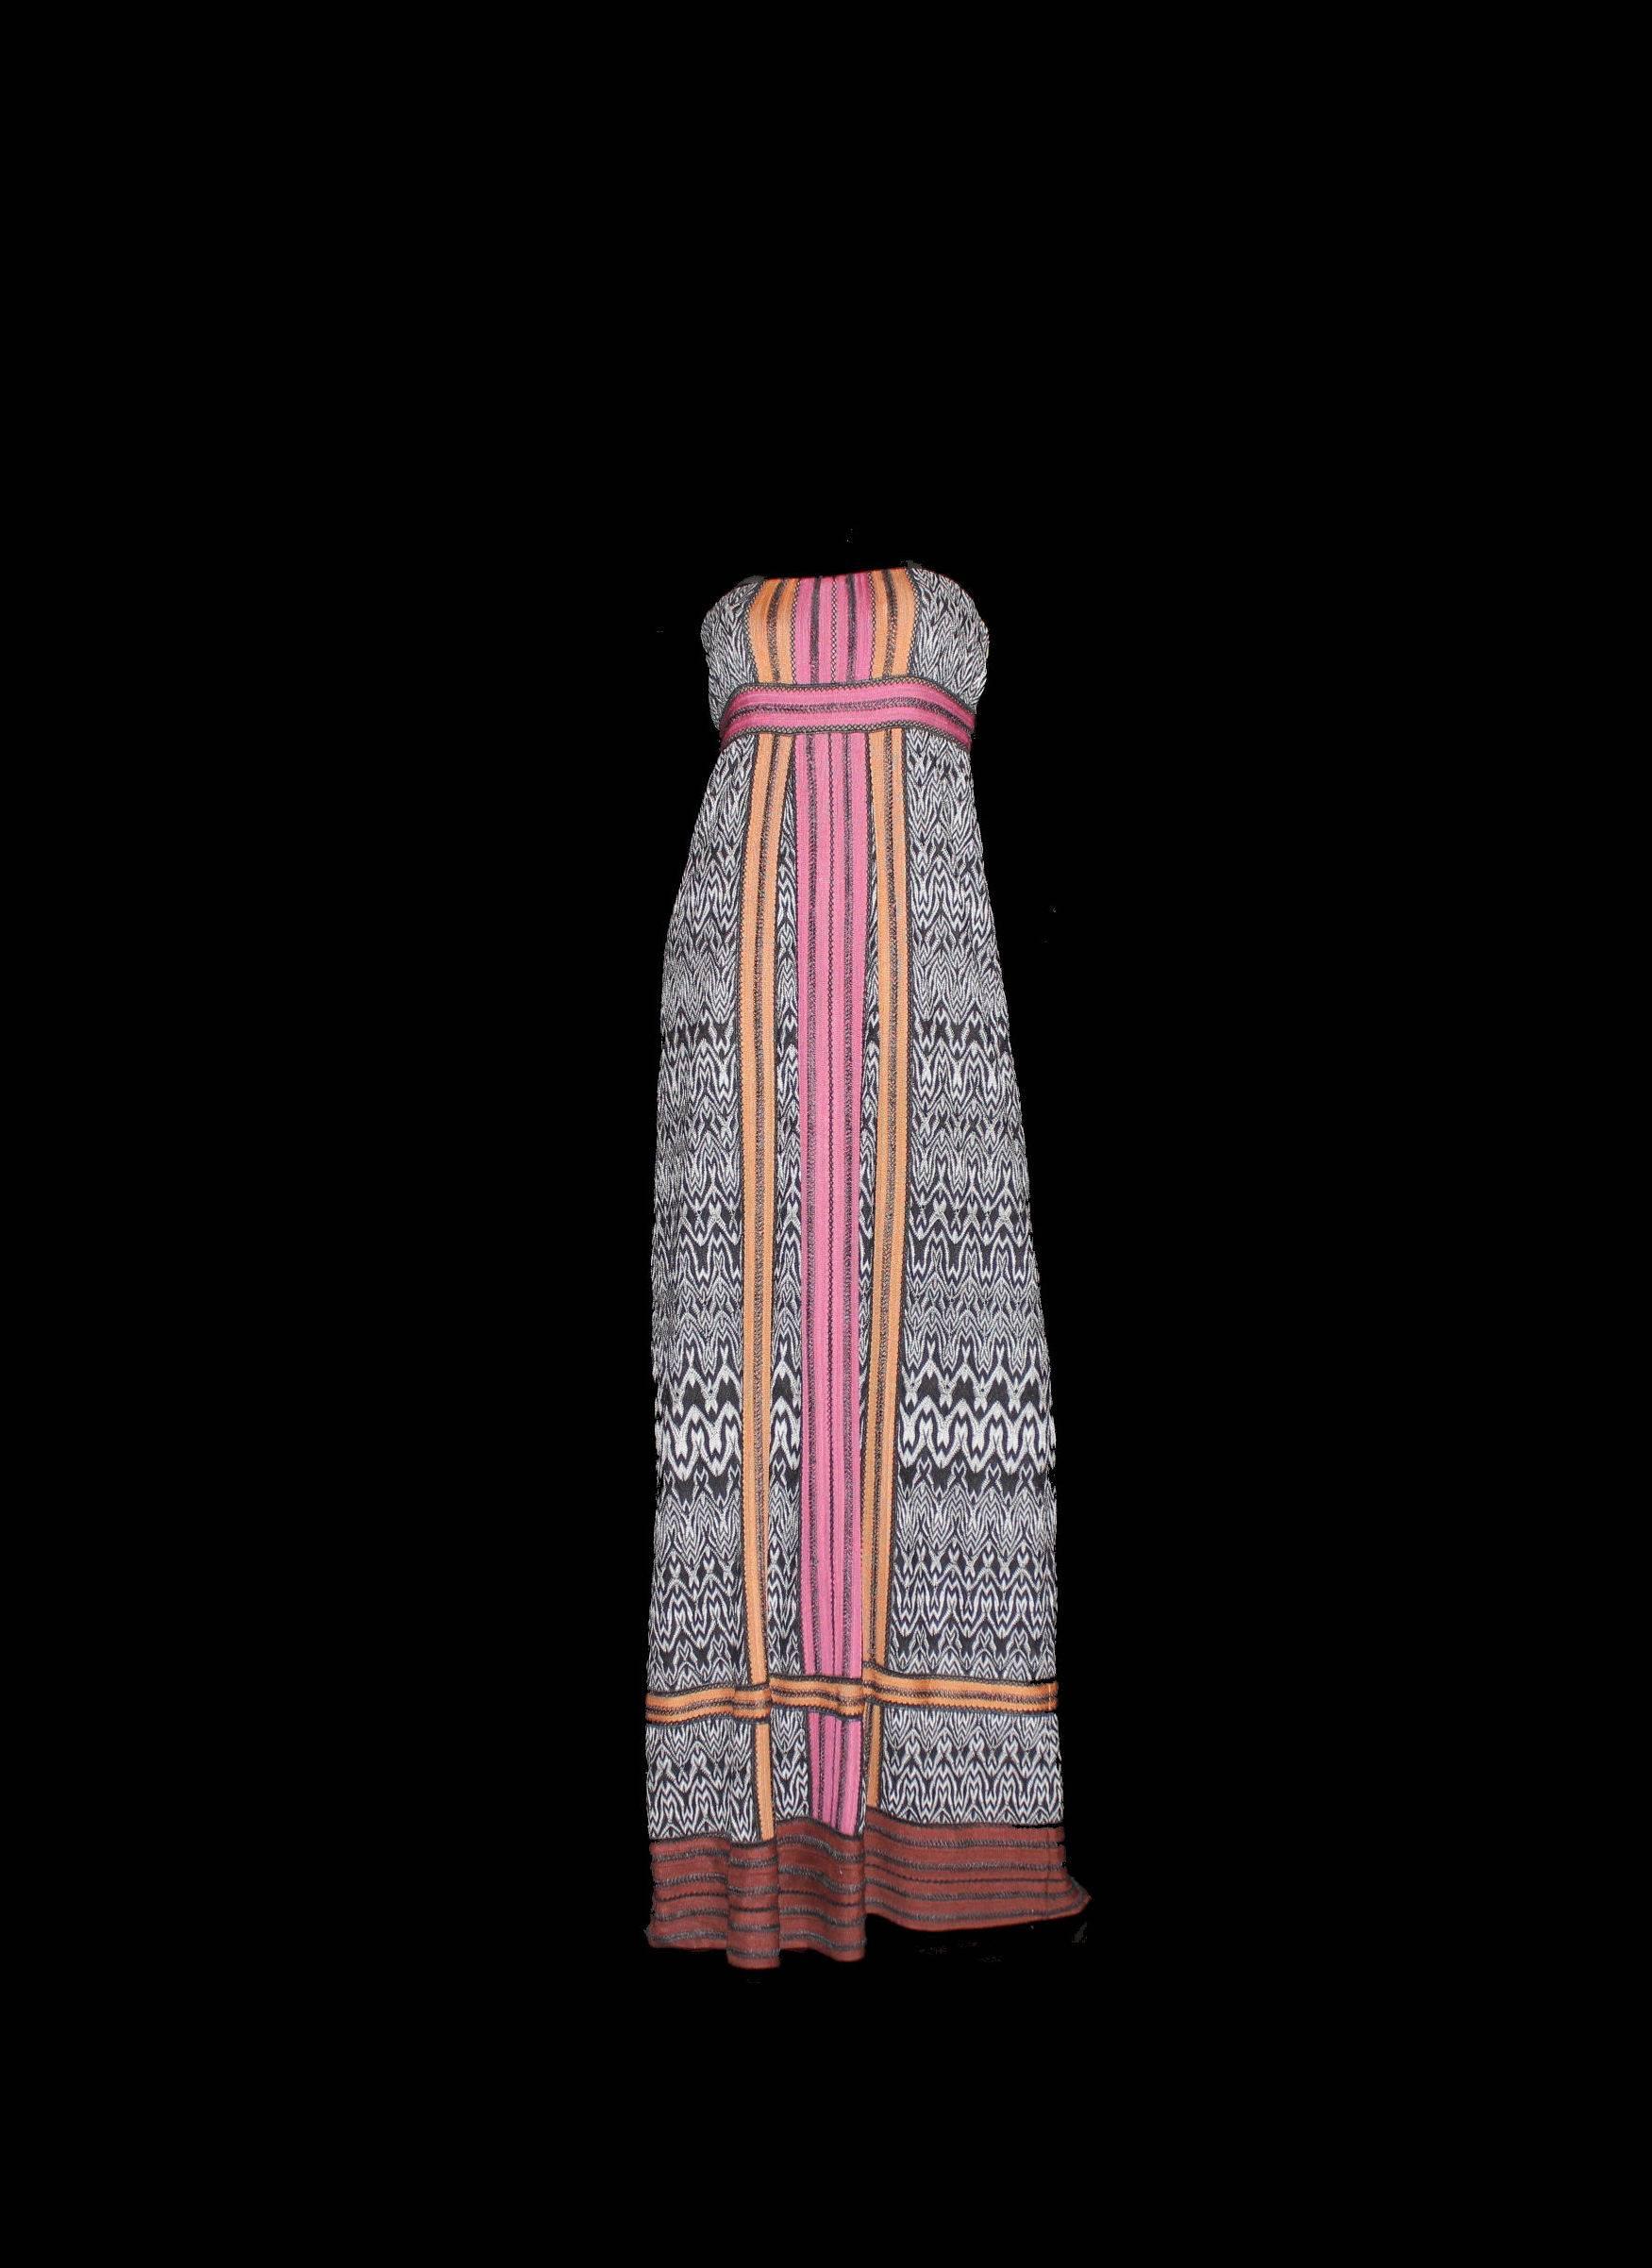 Une pièce étonnante de Missoni.
Étonnante robe monochrome en tricot crochet avec garniture colorblock
Partie supérieure avec corset intérieur pour un ajustement parfait.
Entièrement doublé
Fabriqué en Italie
Nettoyage à sec uniquement
Taille 42
Prix